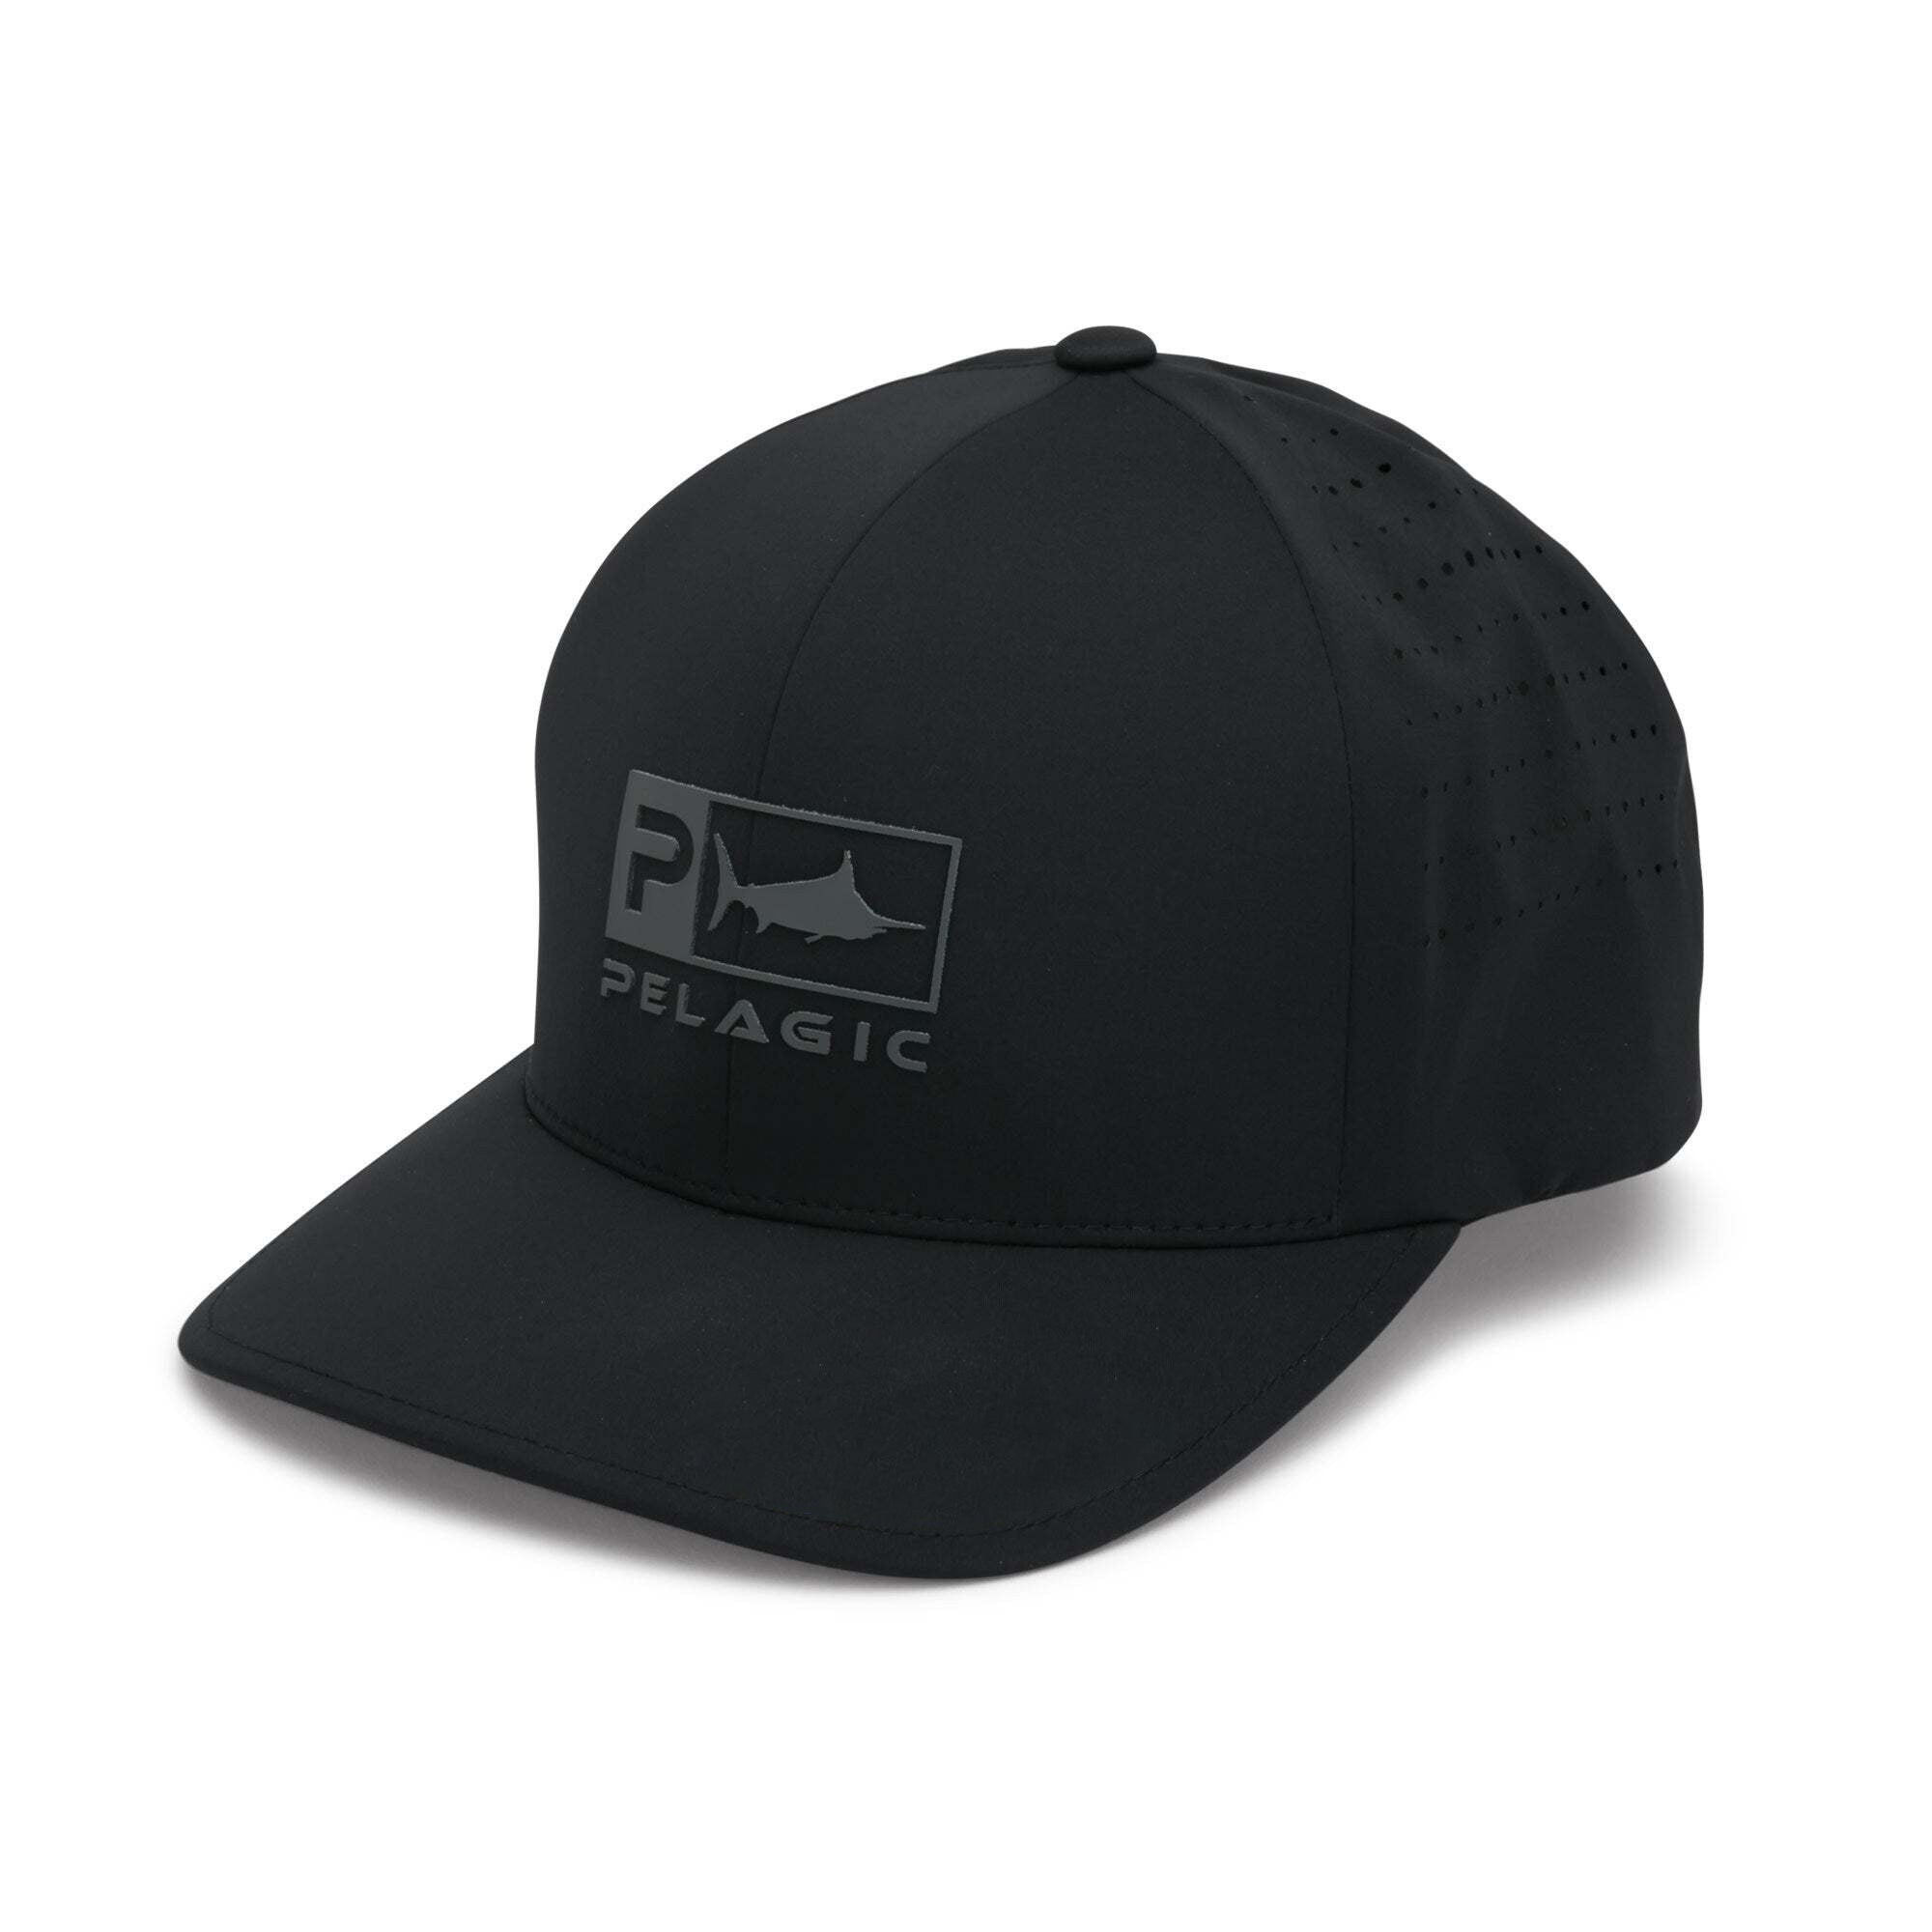 Fish Shop Point Loma Flexfit Hat